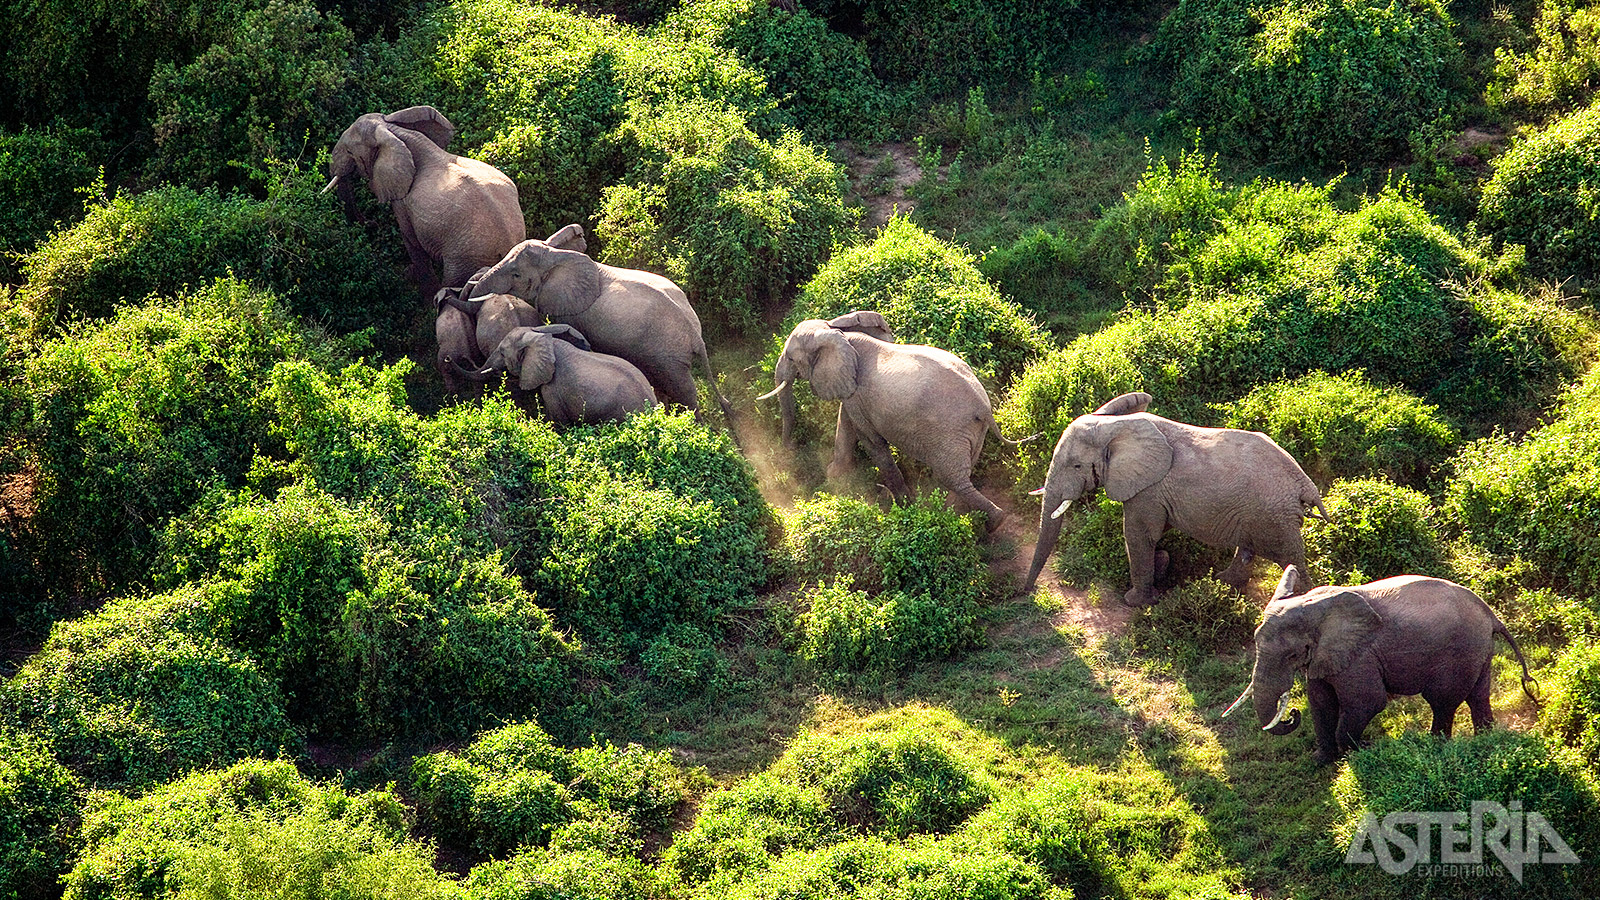 In tegenstelling tot andere streken heeft de olifantenpopulatie van Amboseli niet te lijden gehad onder stropers